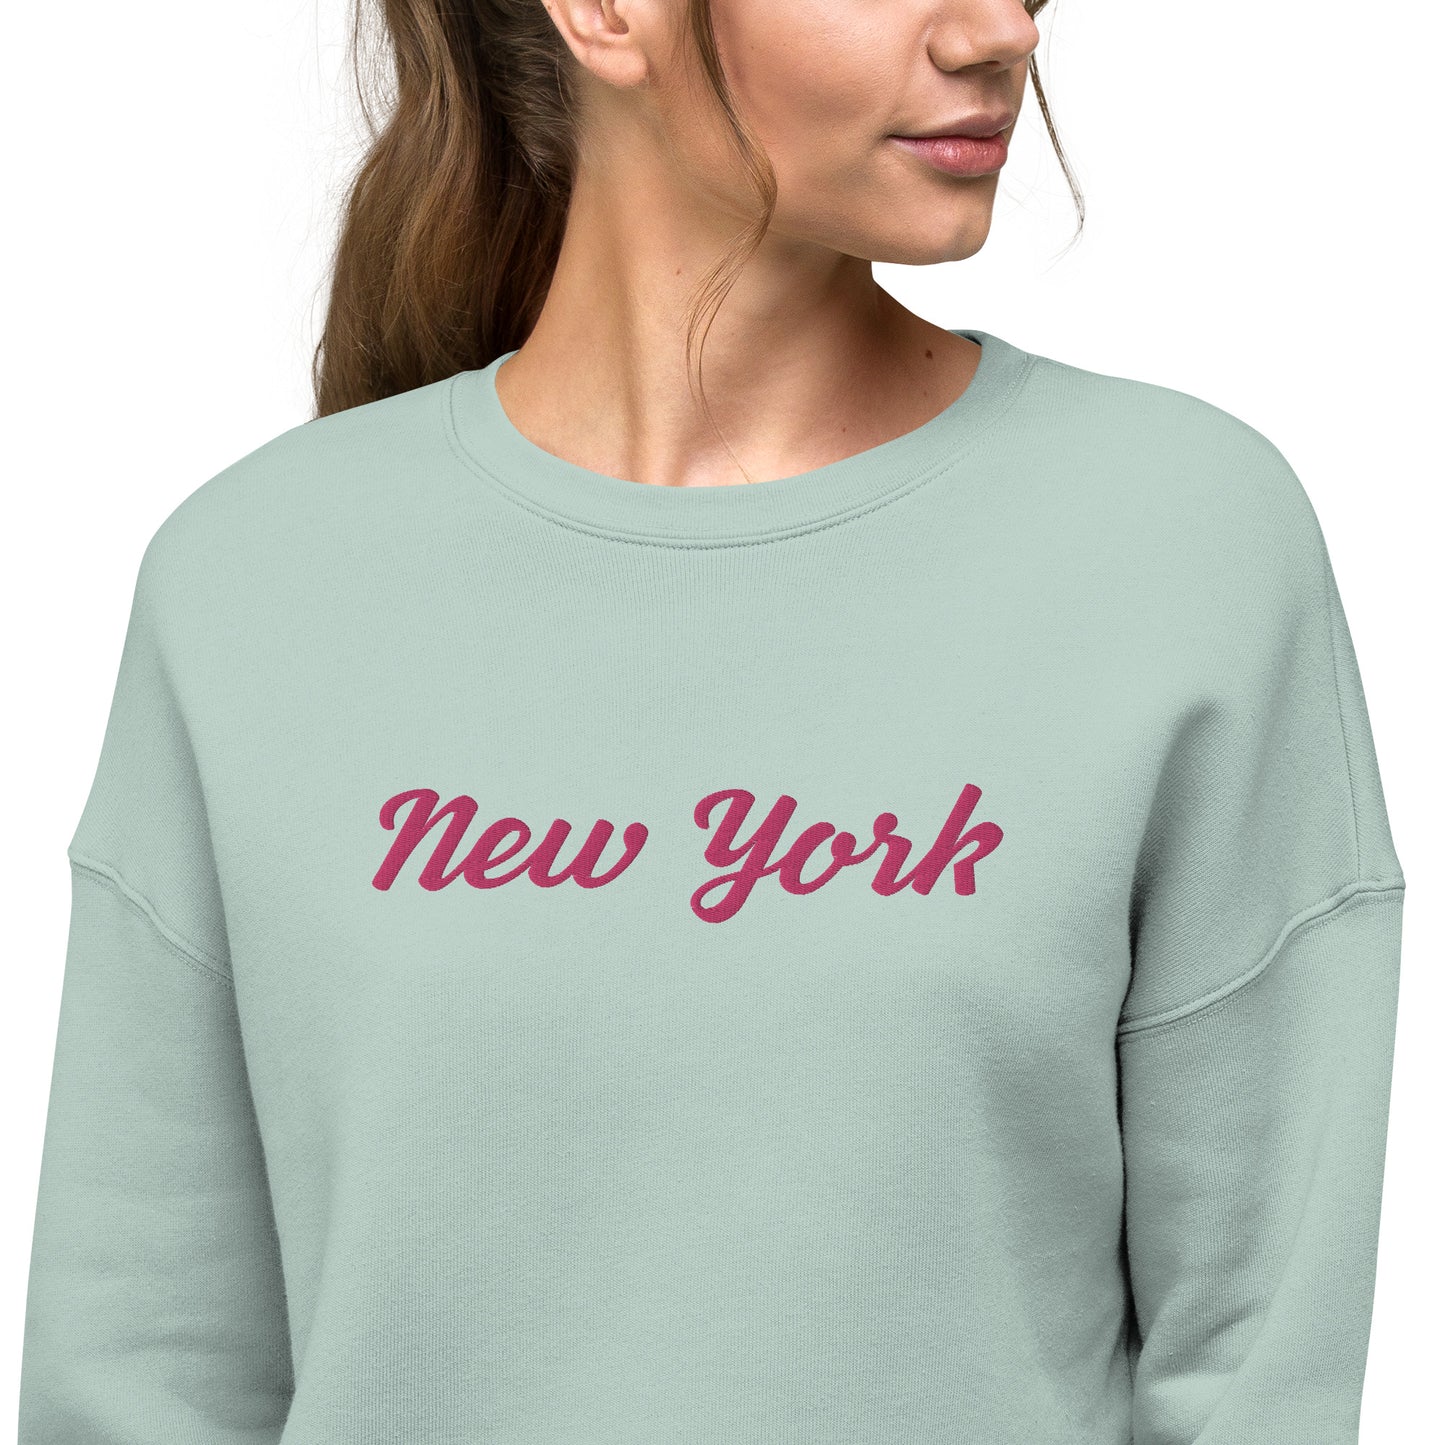 "New York" women's short crop sweatshirt